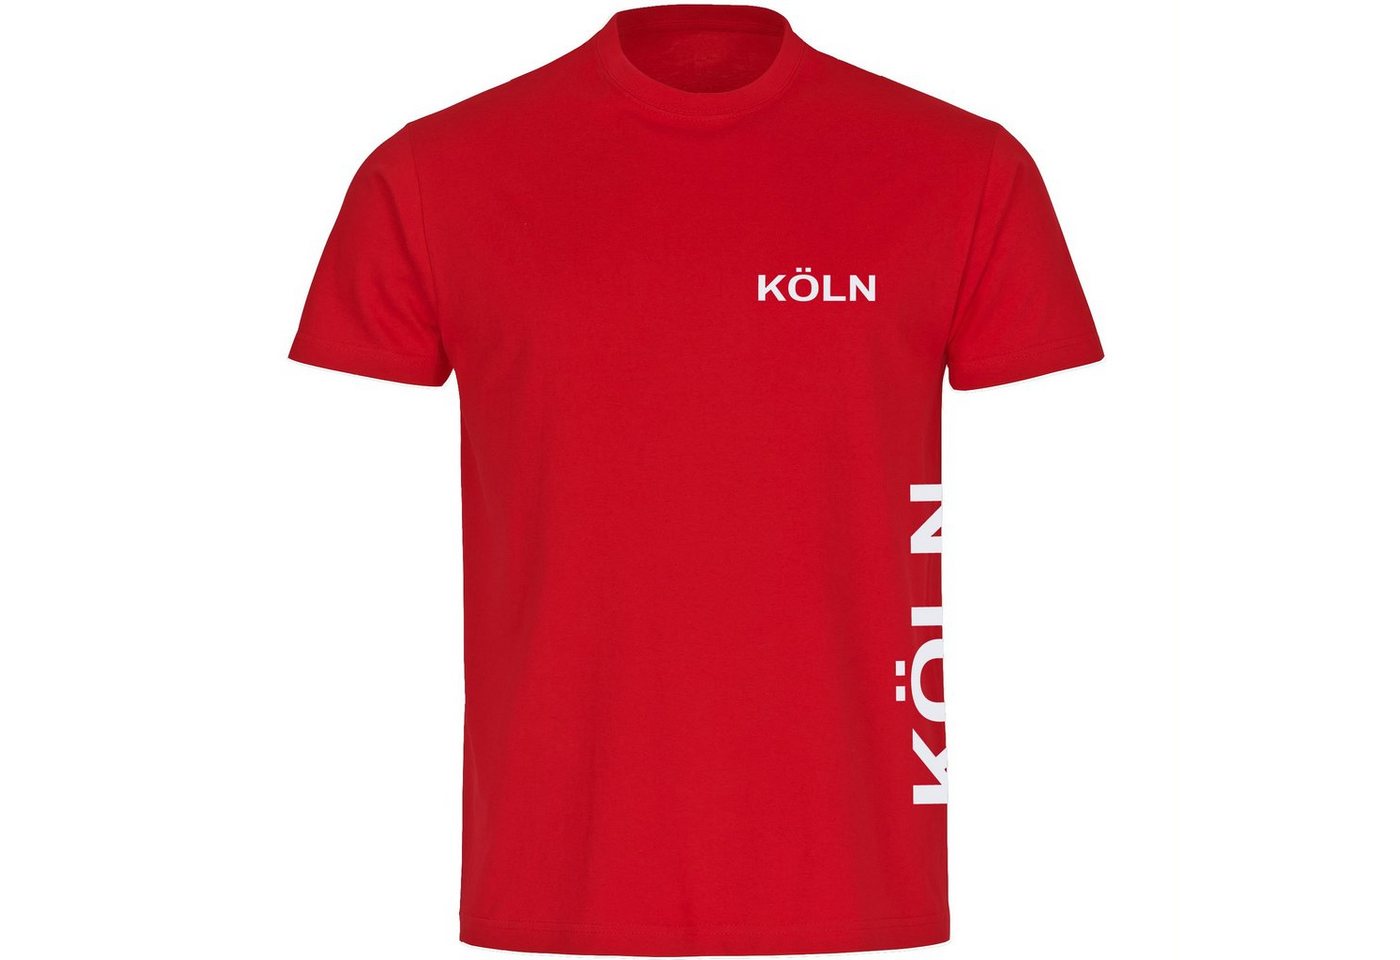 multifanshop T-Shirt Herren Köln - Brust & Seite - Männer von multifanshop